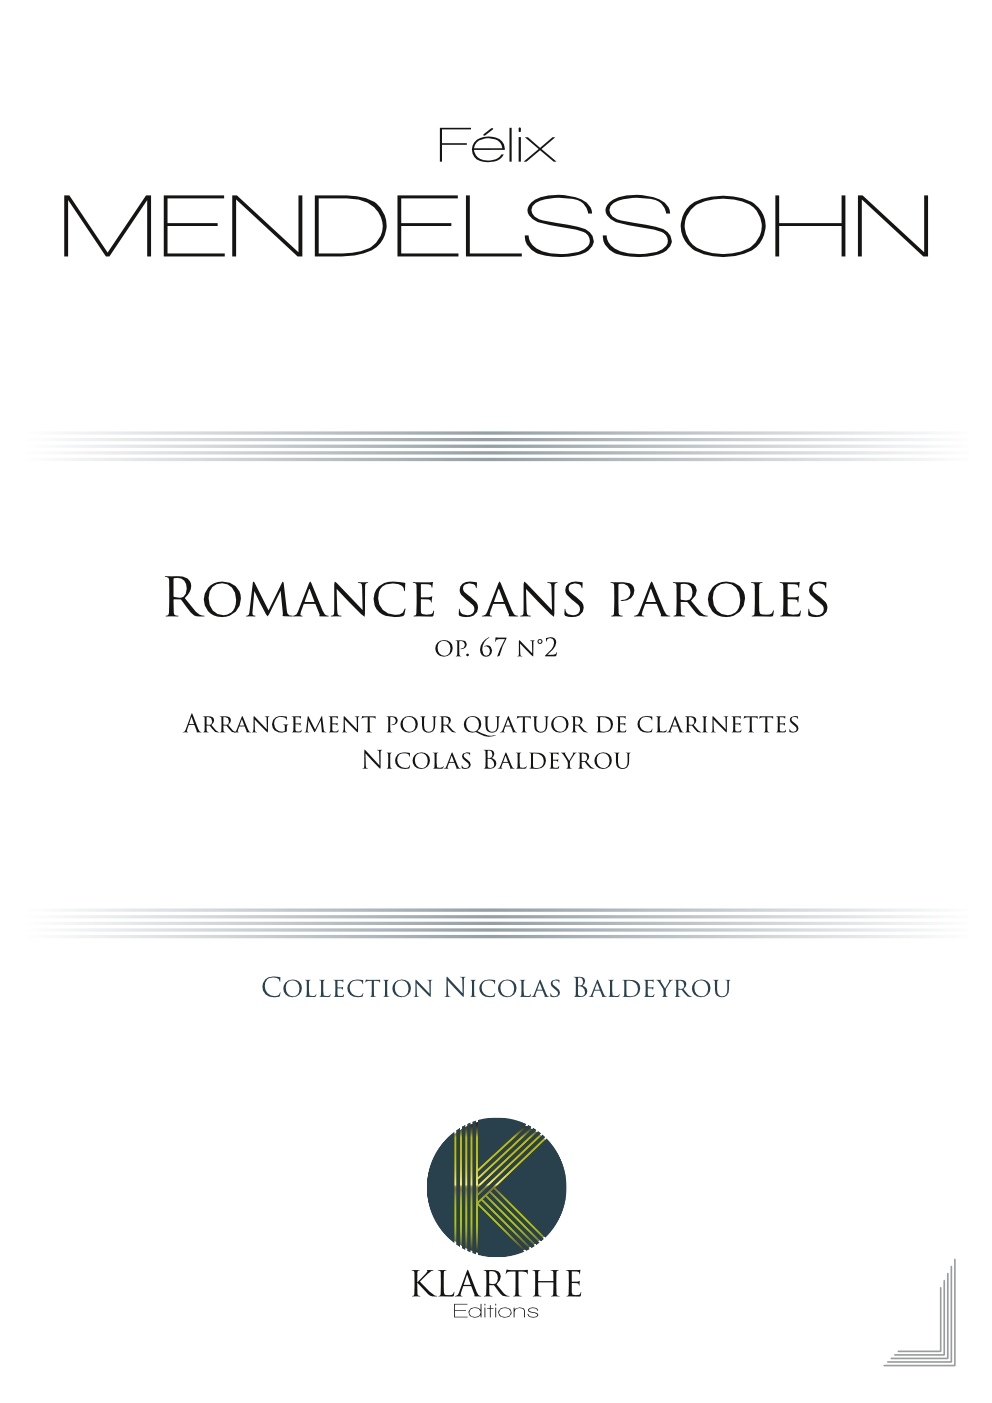 Romance sans paroles opus 67, n4 (MENDELSSOHN-BARTHOLDY FELIX)